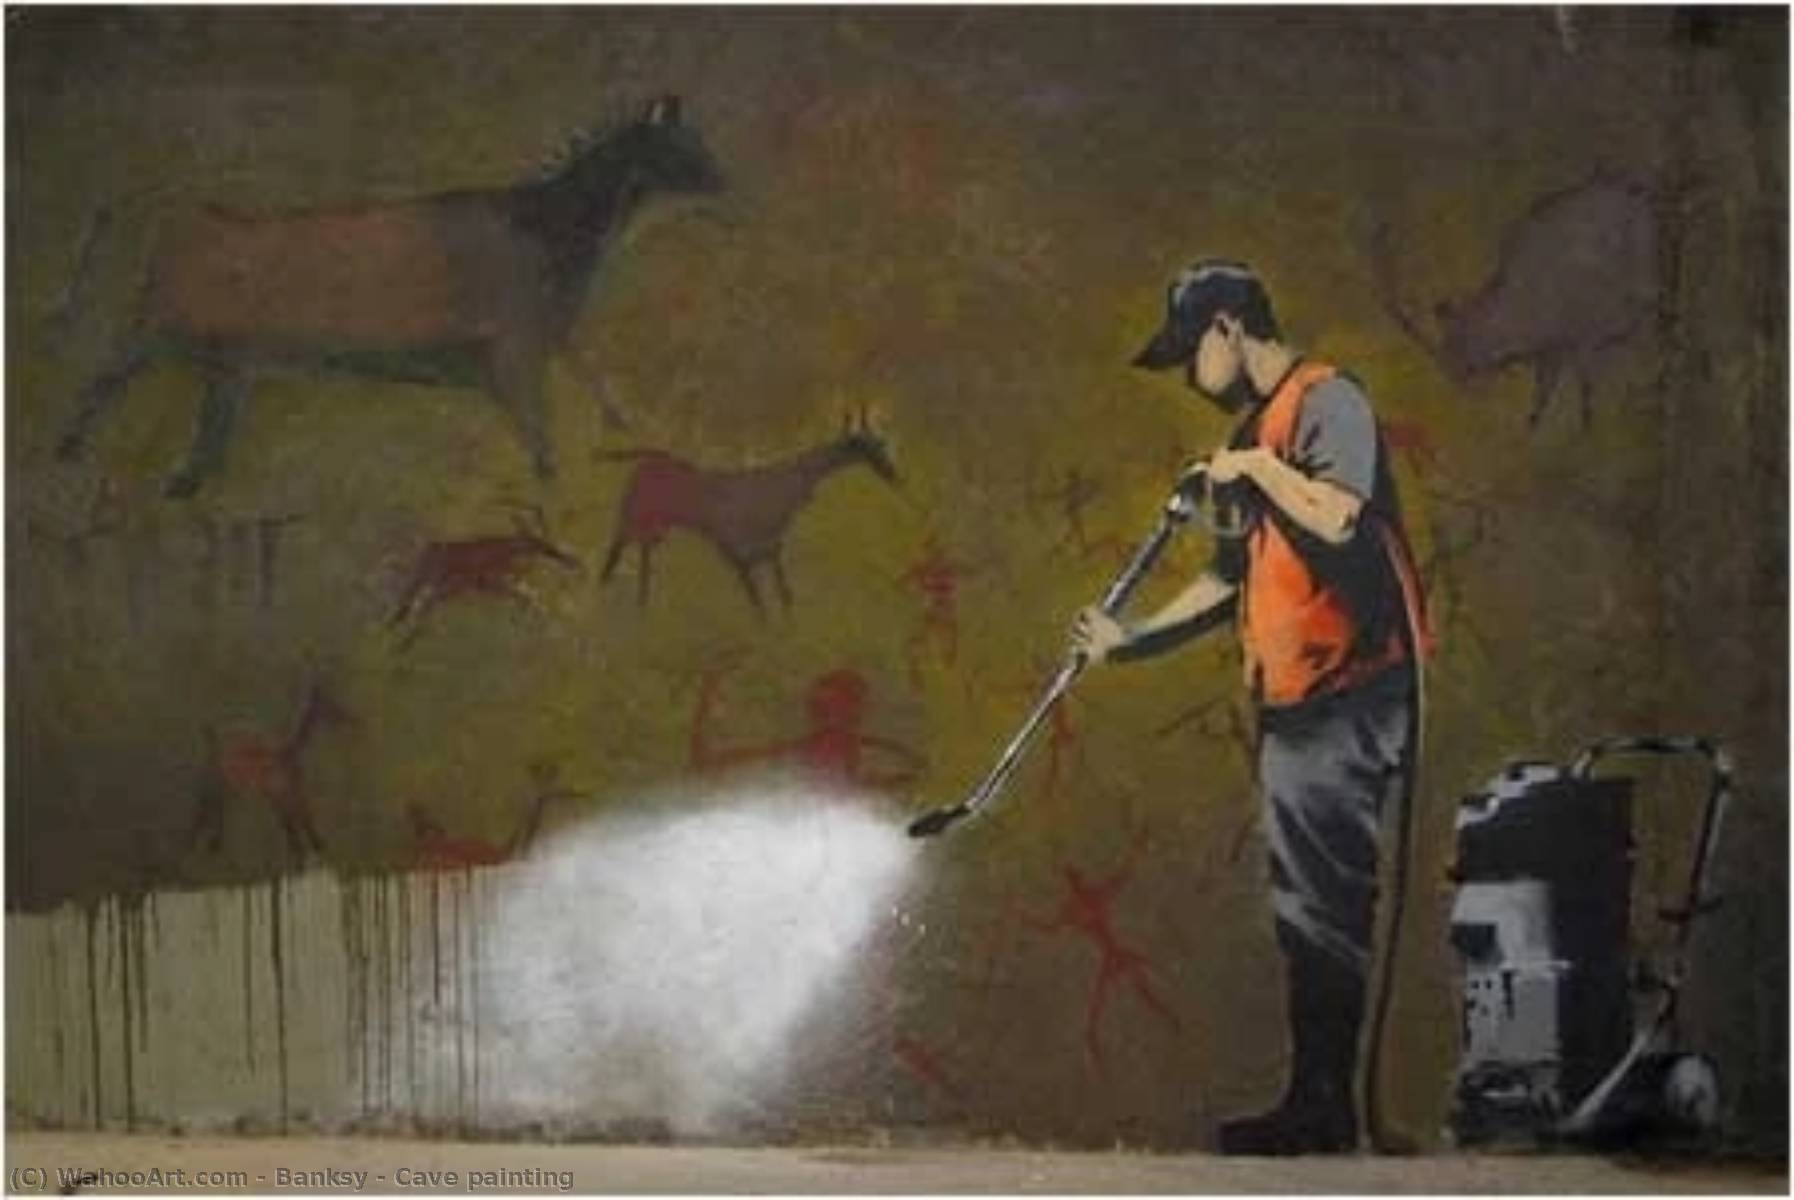 WikiOO.org - אנציקלופדיה לאמנויות יפות - ציור, יצירות אמנות Banksy - Cave painting